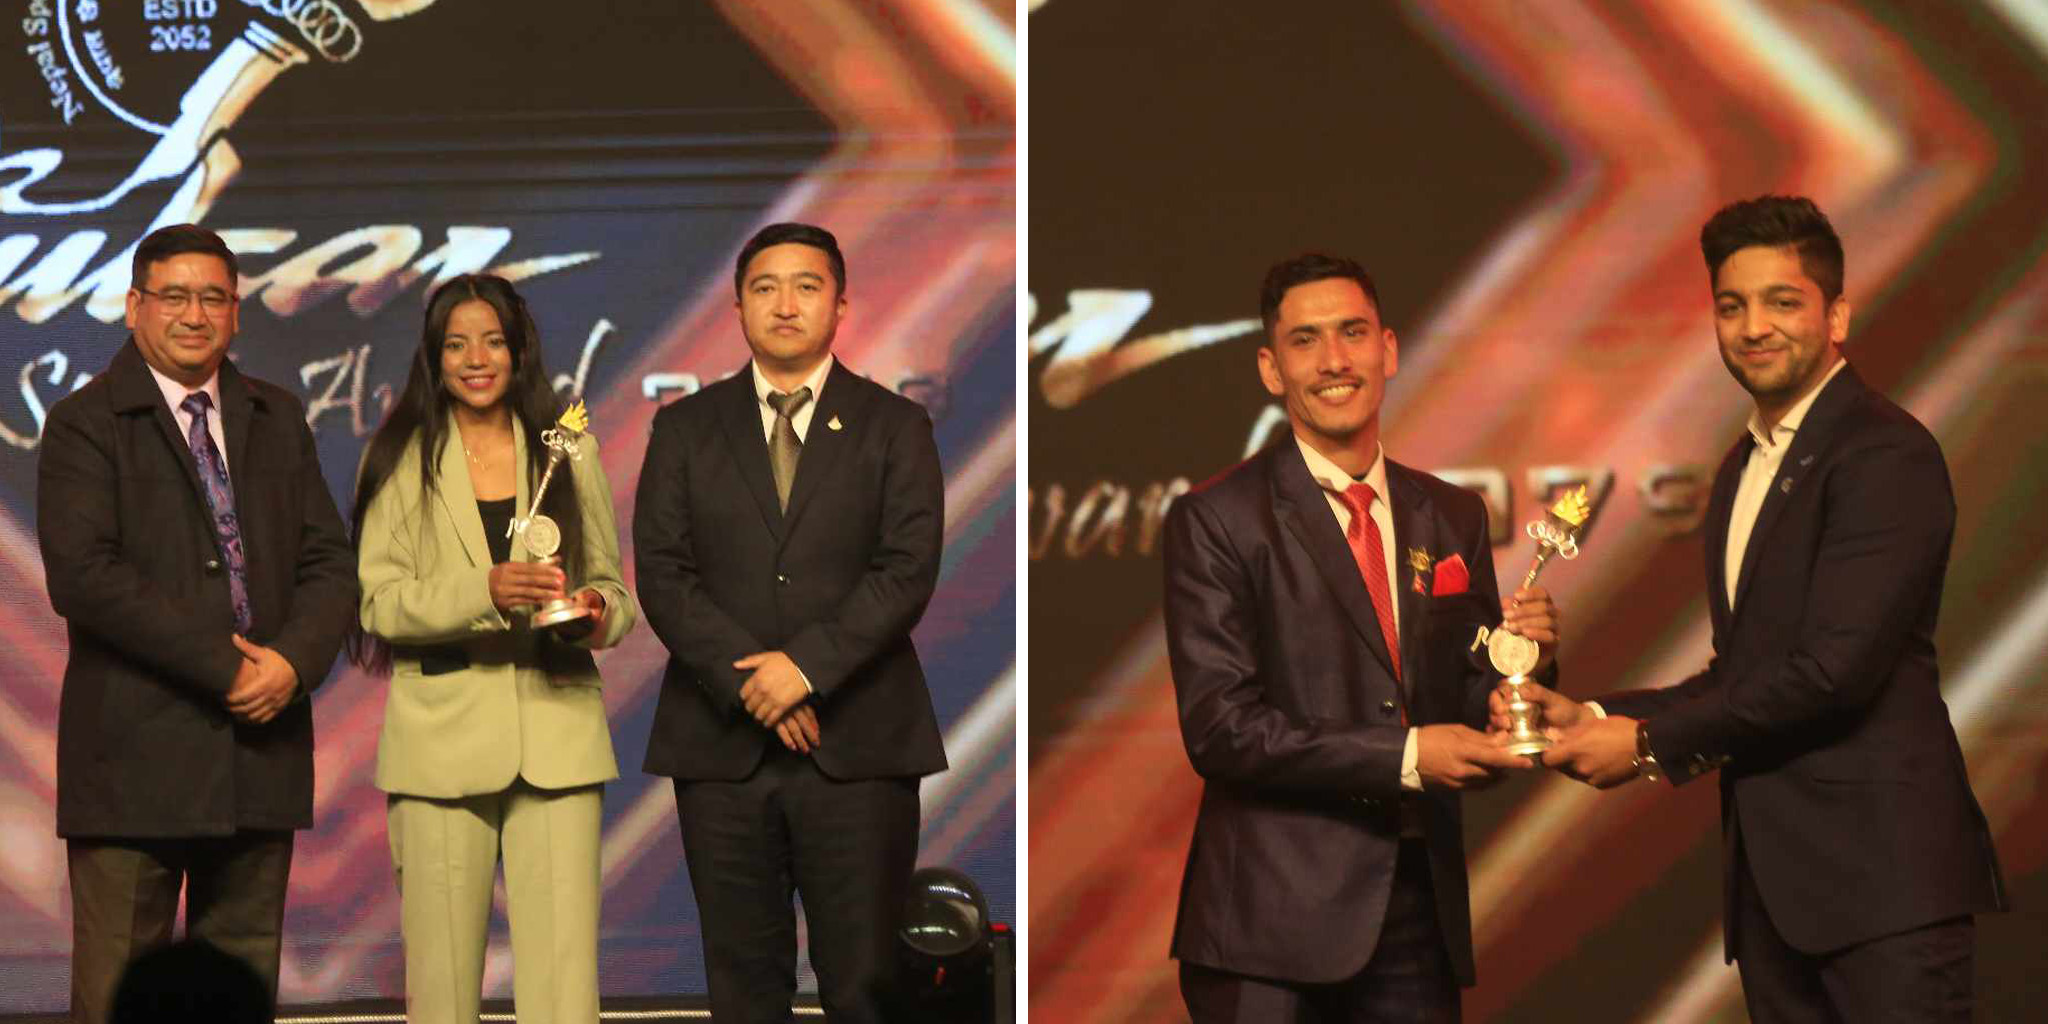 Deepak Adhikari, Rajpura Pachhai win best player awards